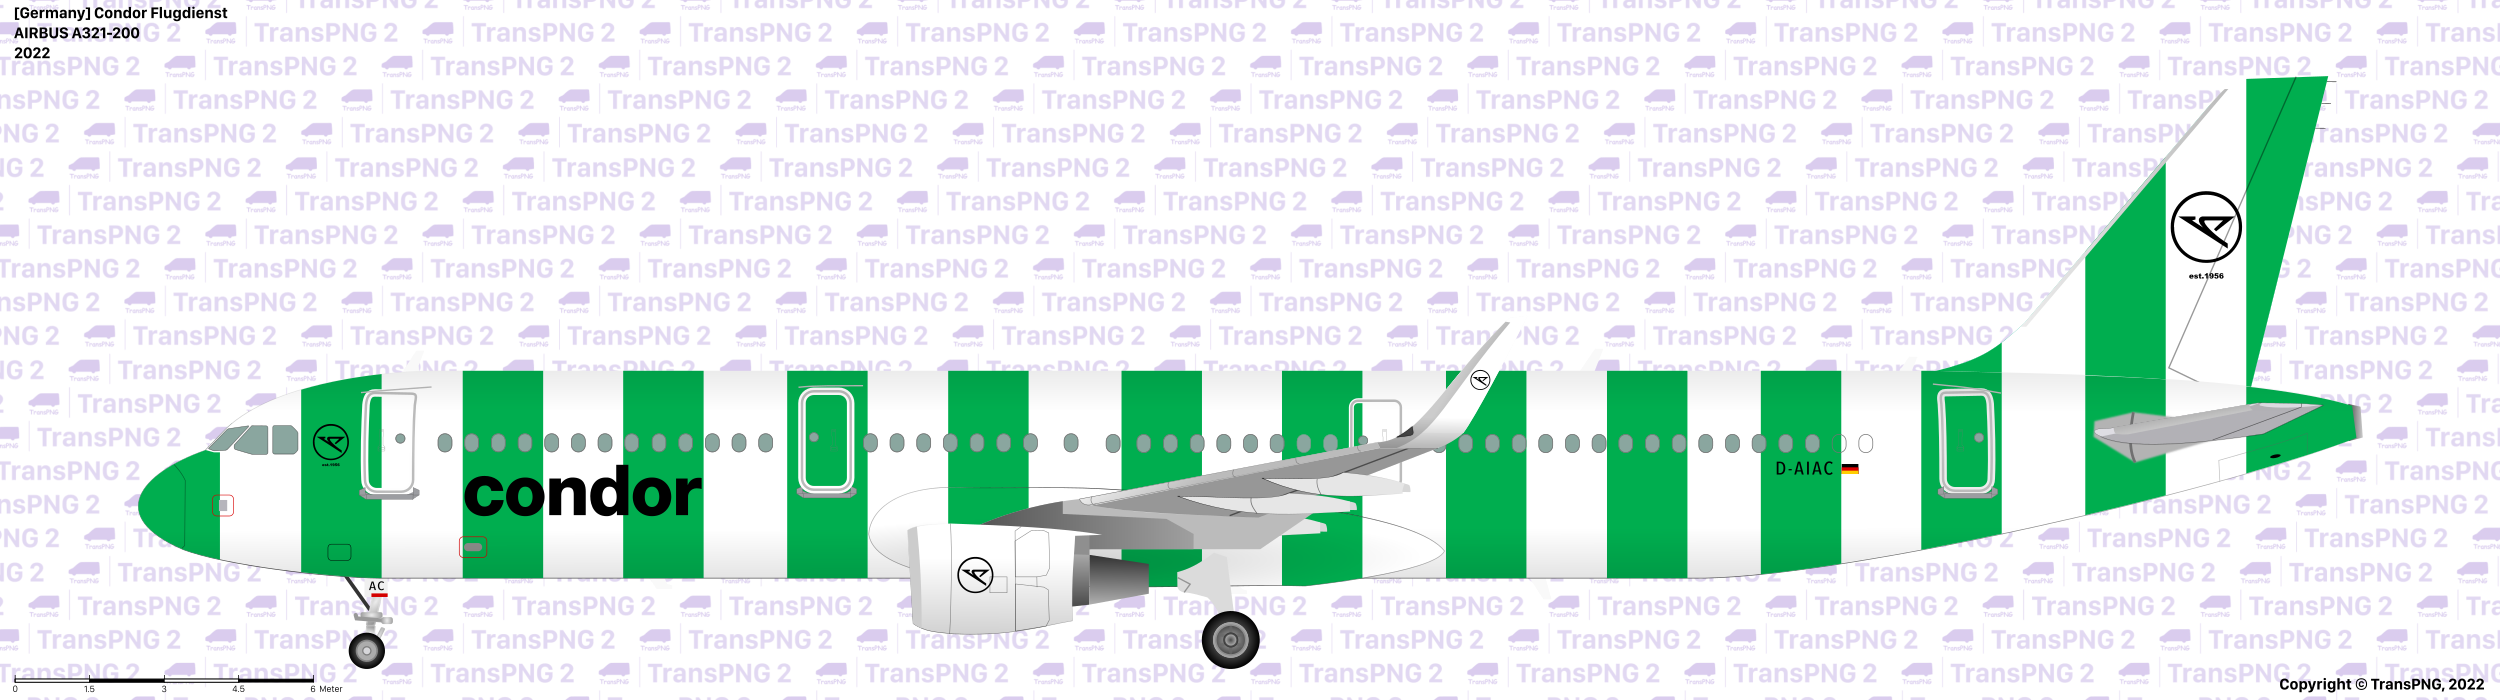 TransPNG.net | 分享世界各地多種交通工具的優秀繪圖 - 飛機 52511465124_d1f2ee8dd1_o